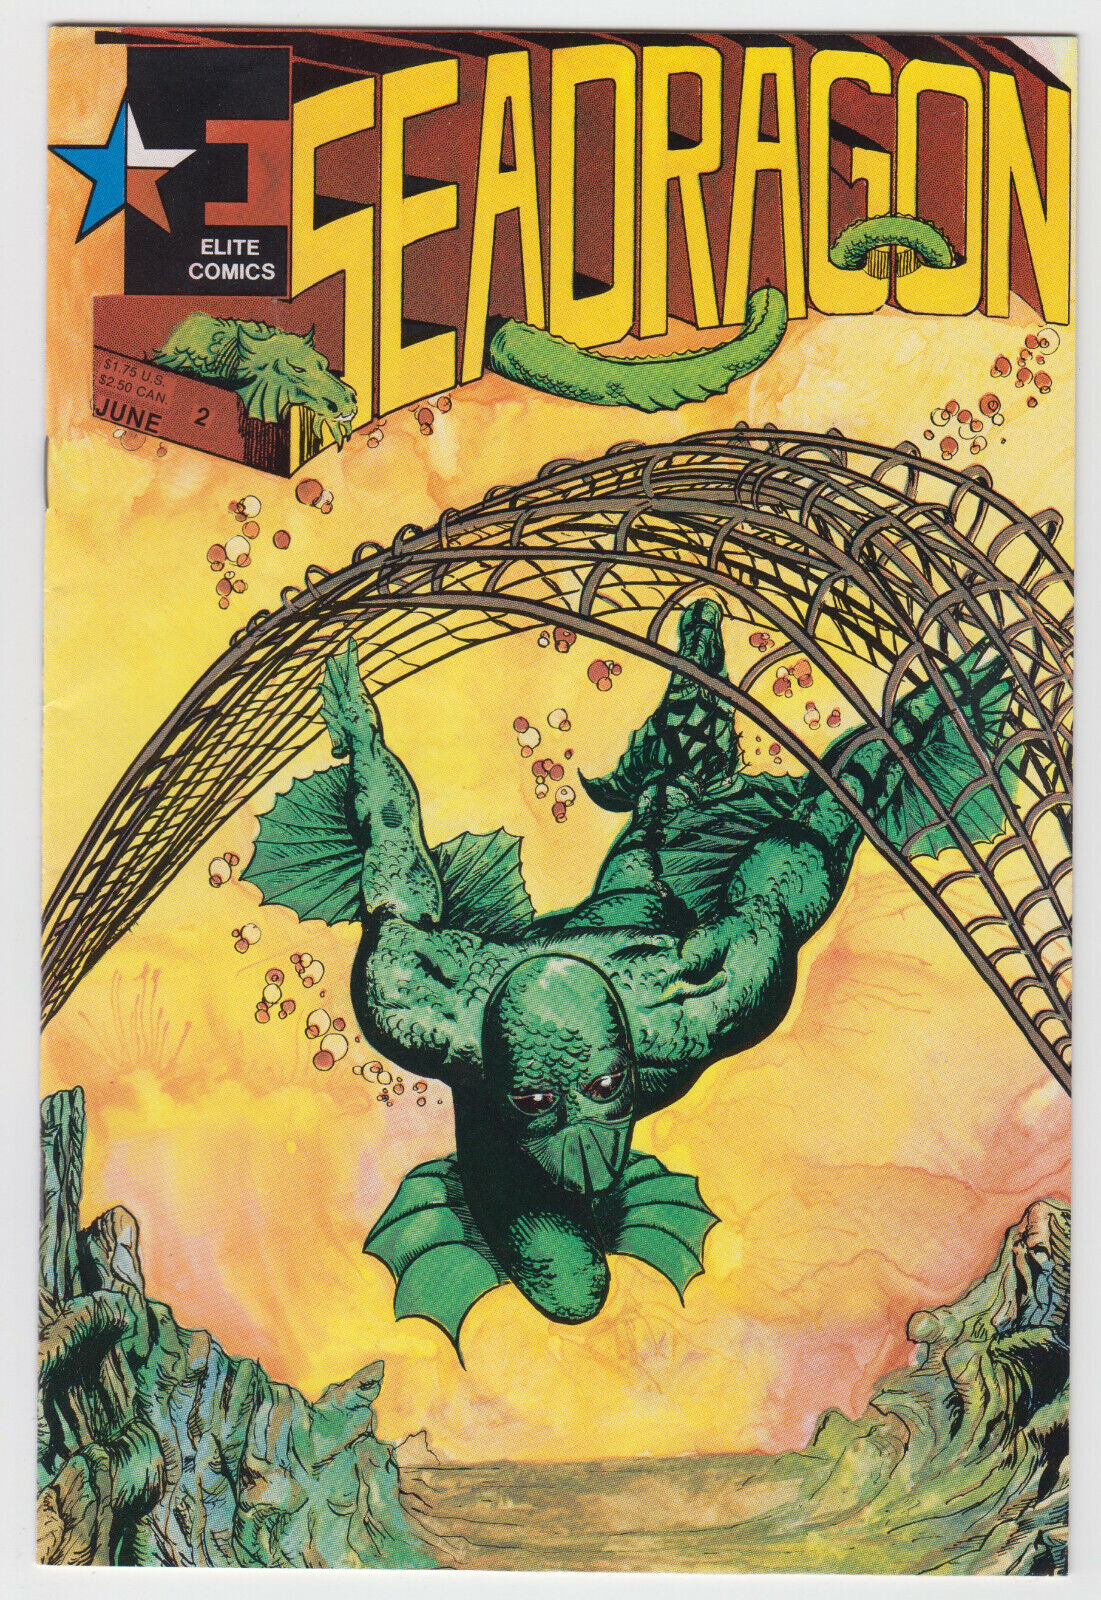 Seadragon Issue #2, Elite Comics (1986), Near Mint